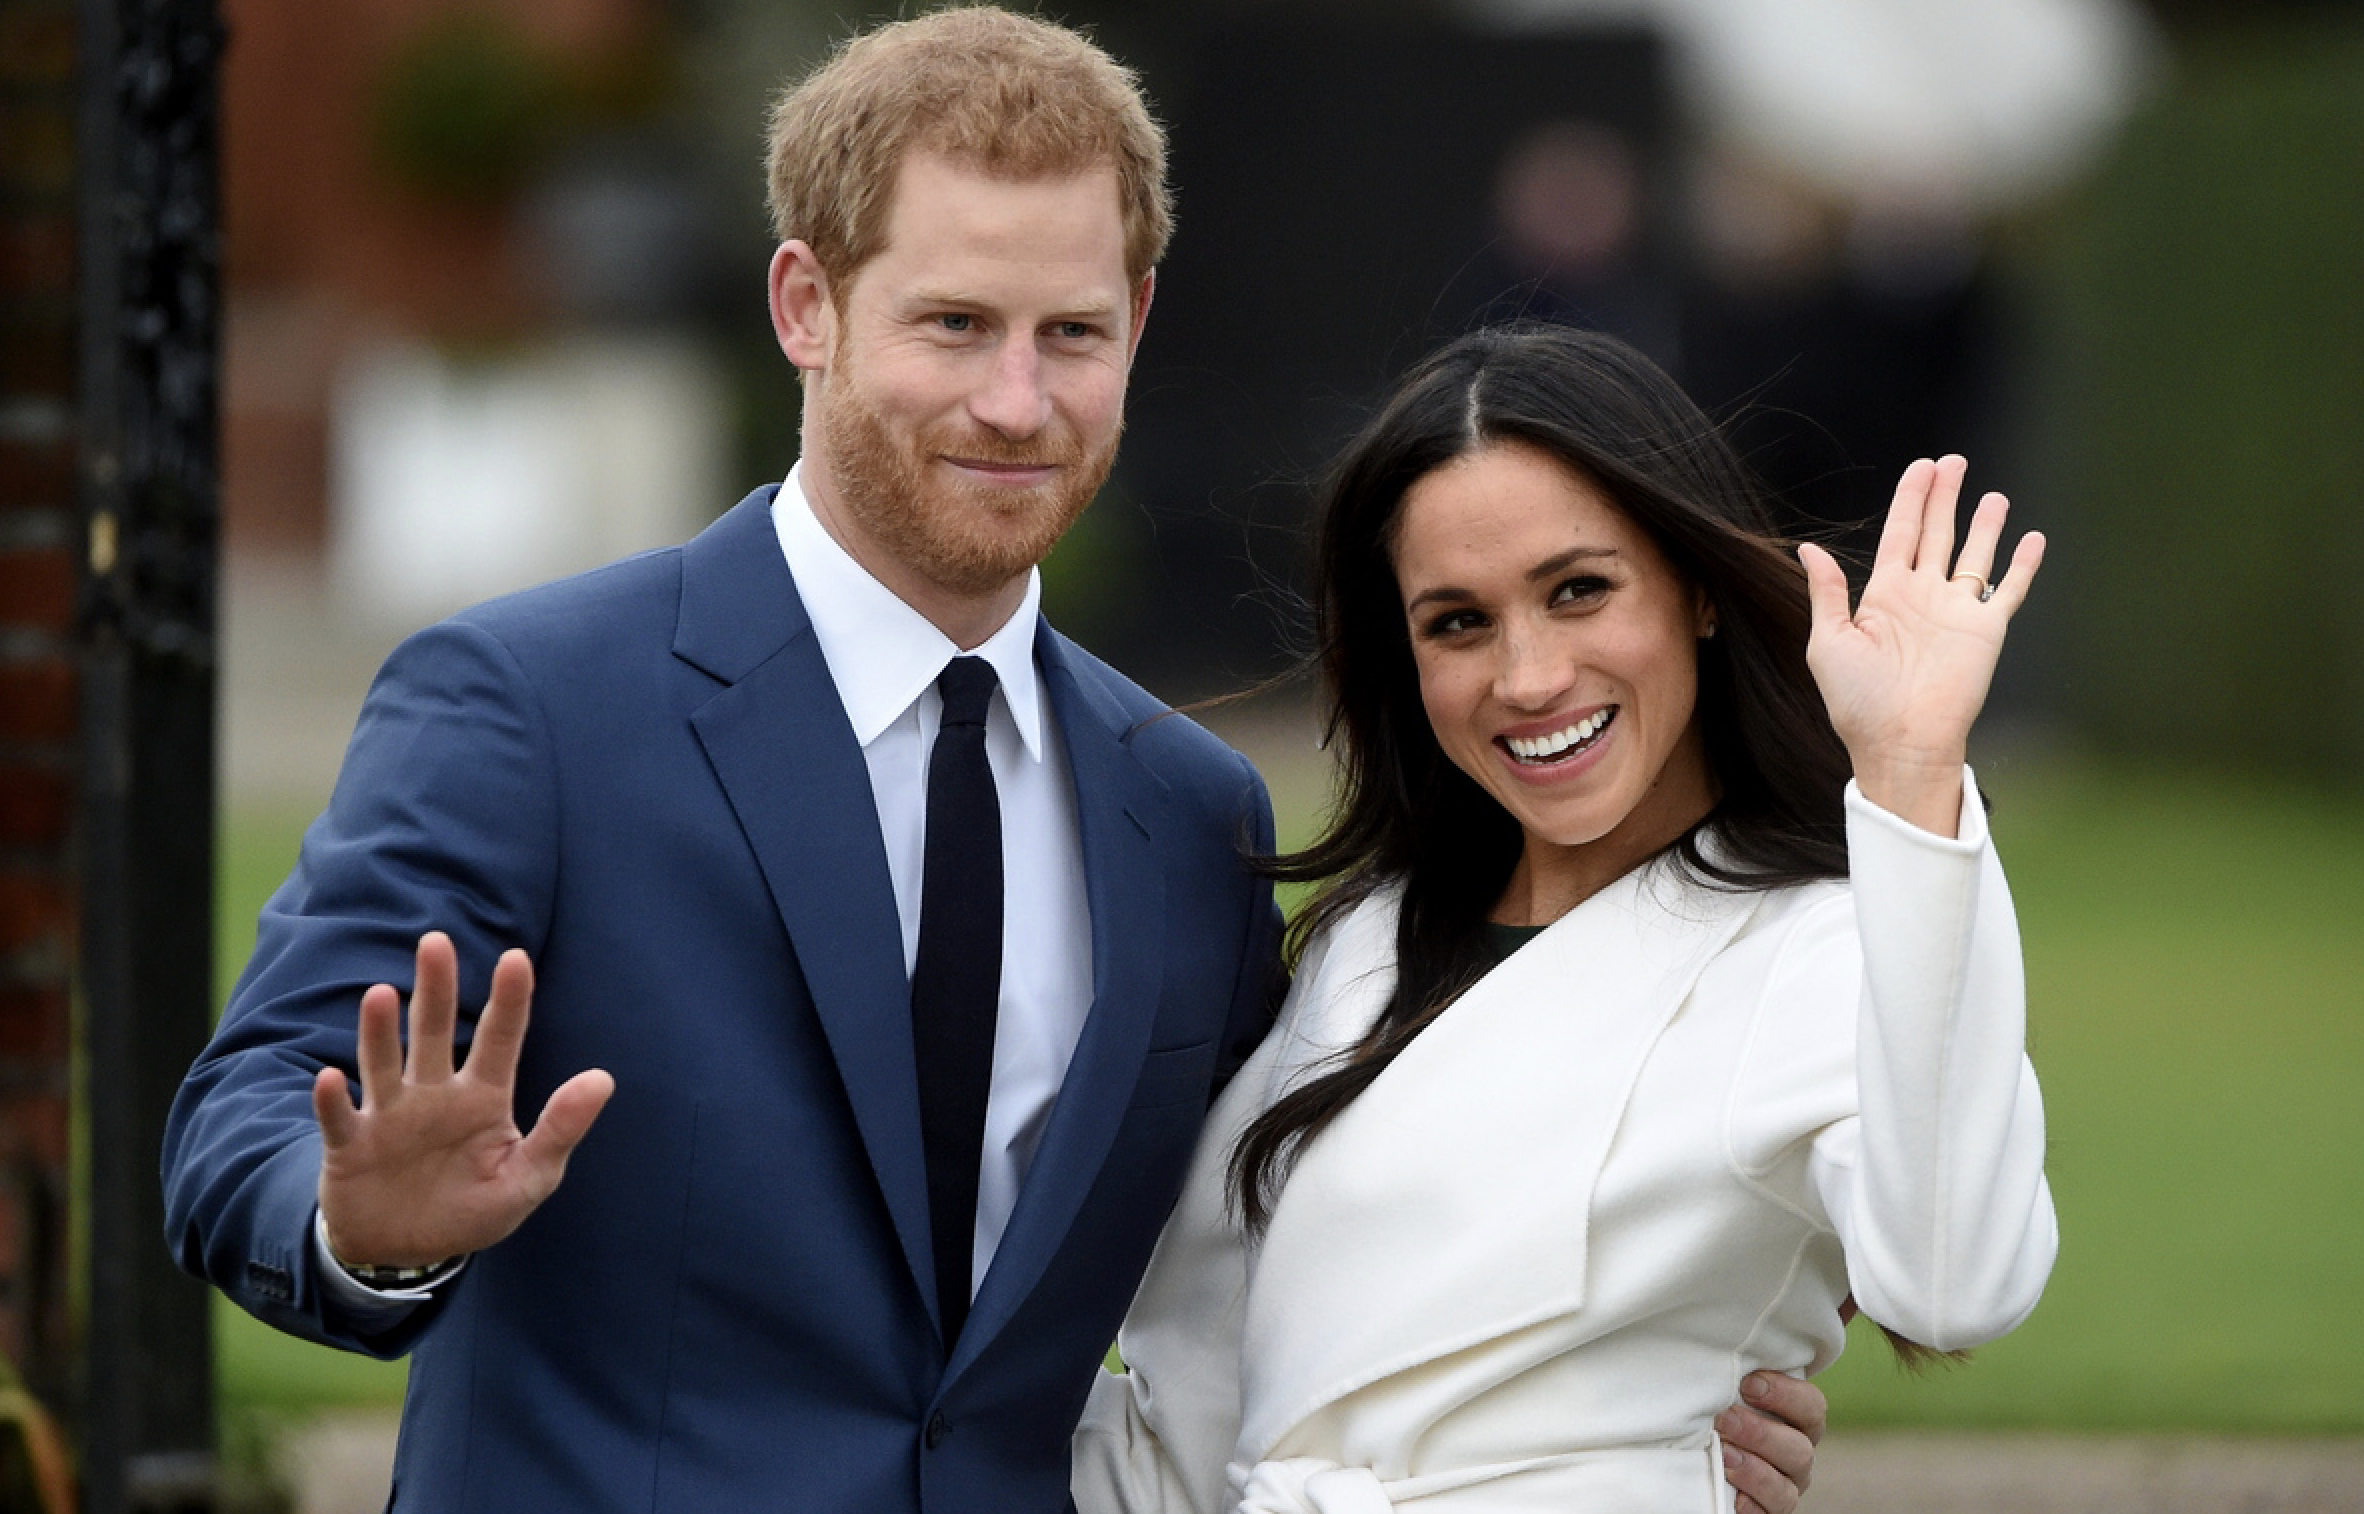 Βρετανία: Η βασιλική οικογένεια «υποβαθμίζει» περαιτέρω το ζεύγος Χάρι & Μέγκαν